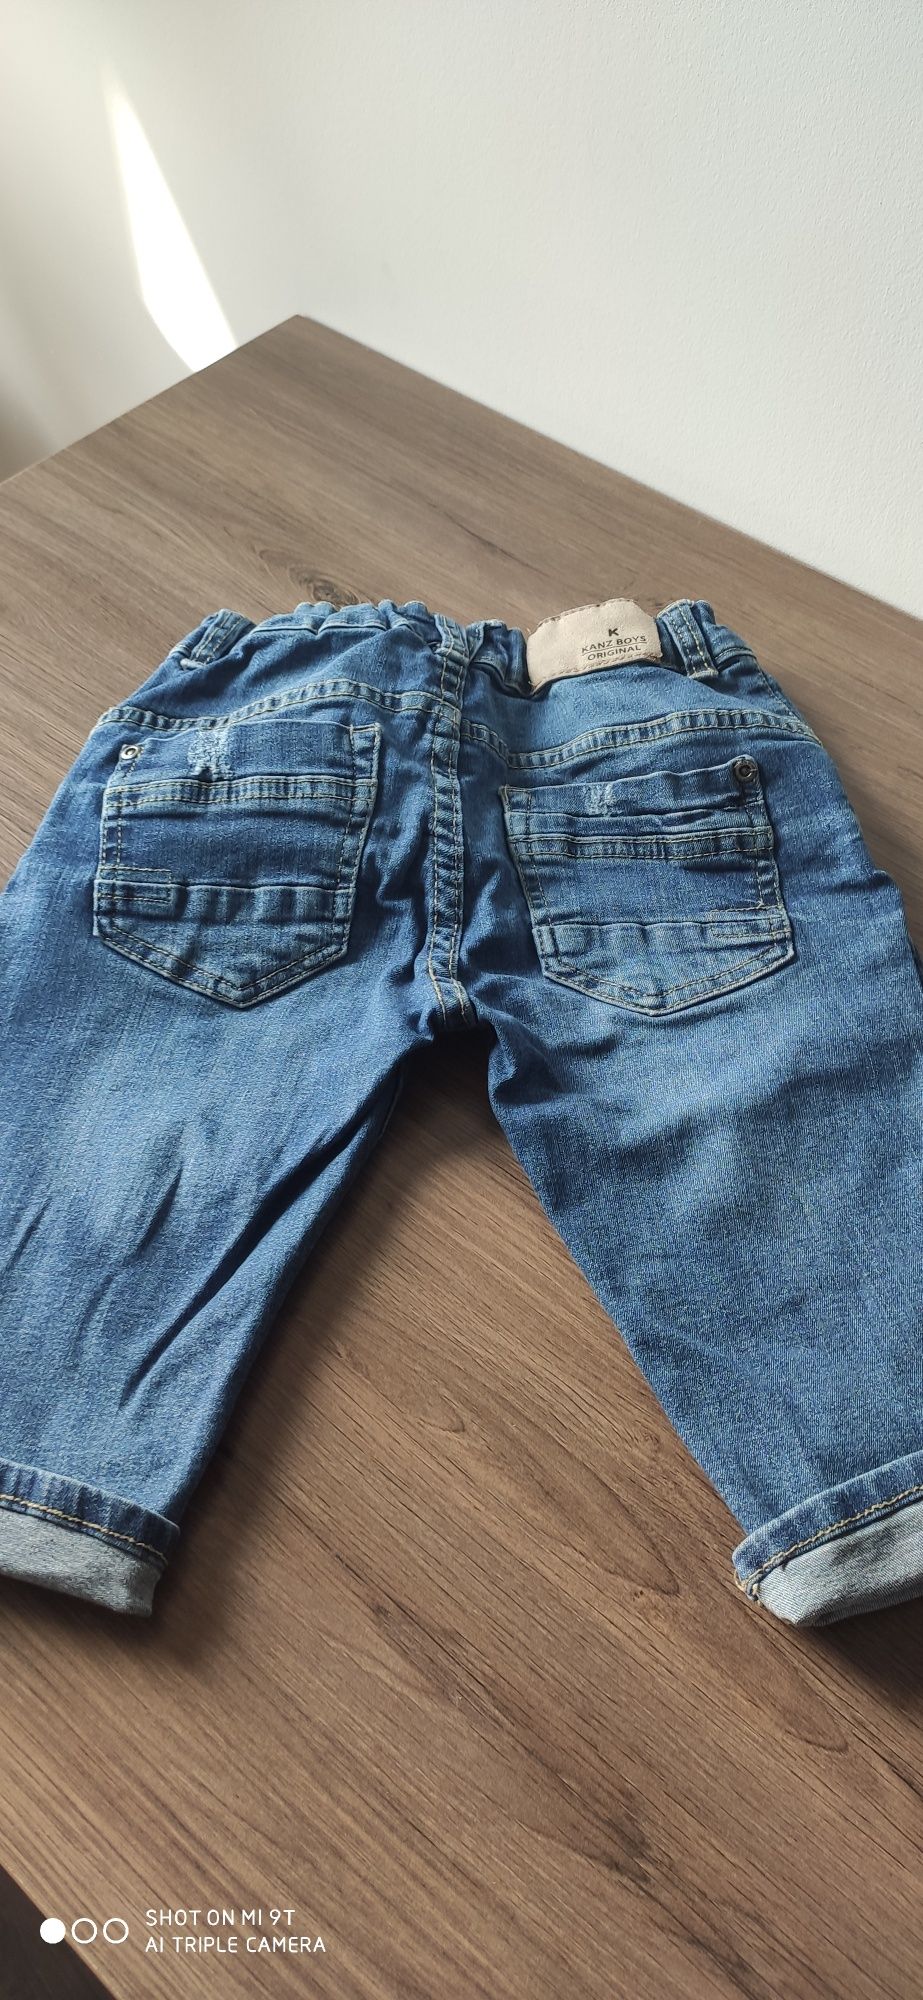 Krótkie spodenki jeansowe komplet Tom Tailor, Kanz dla chłopca